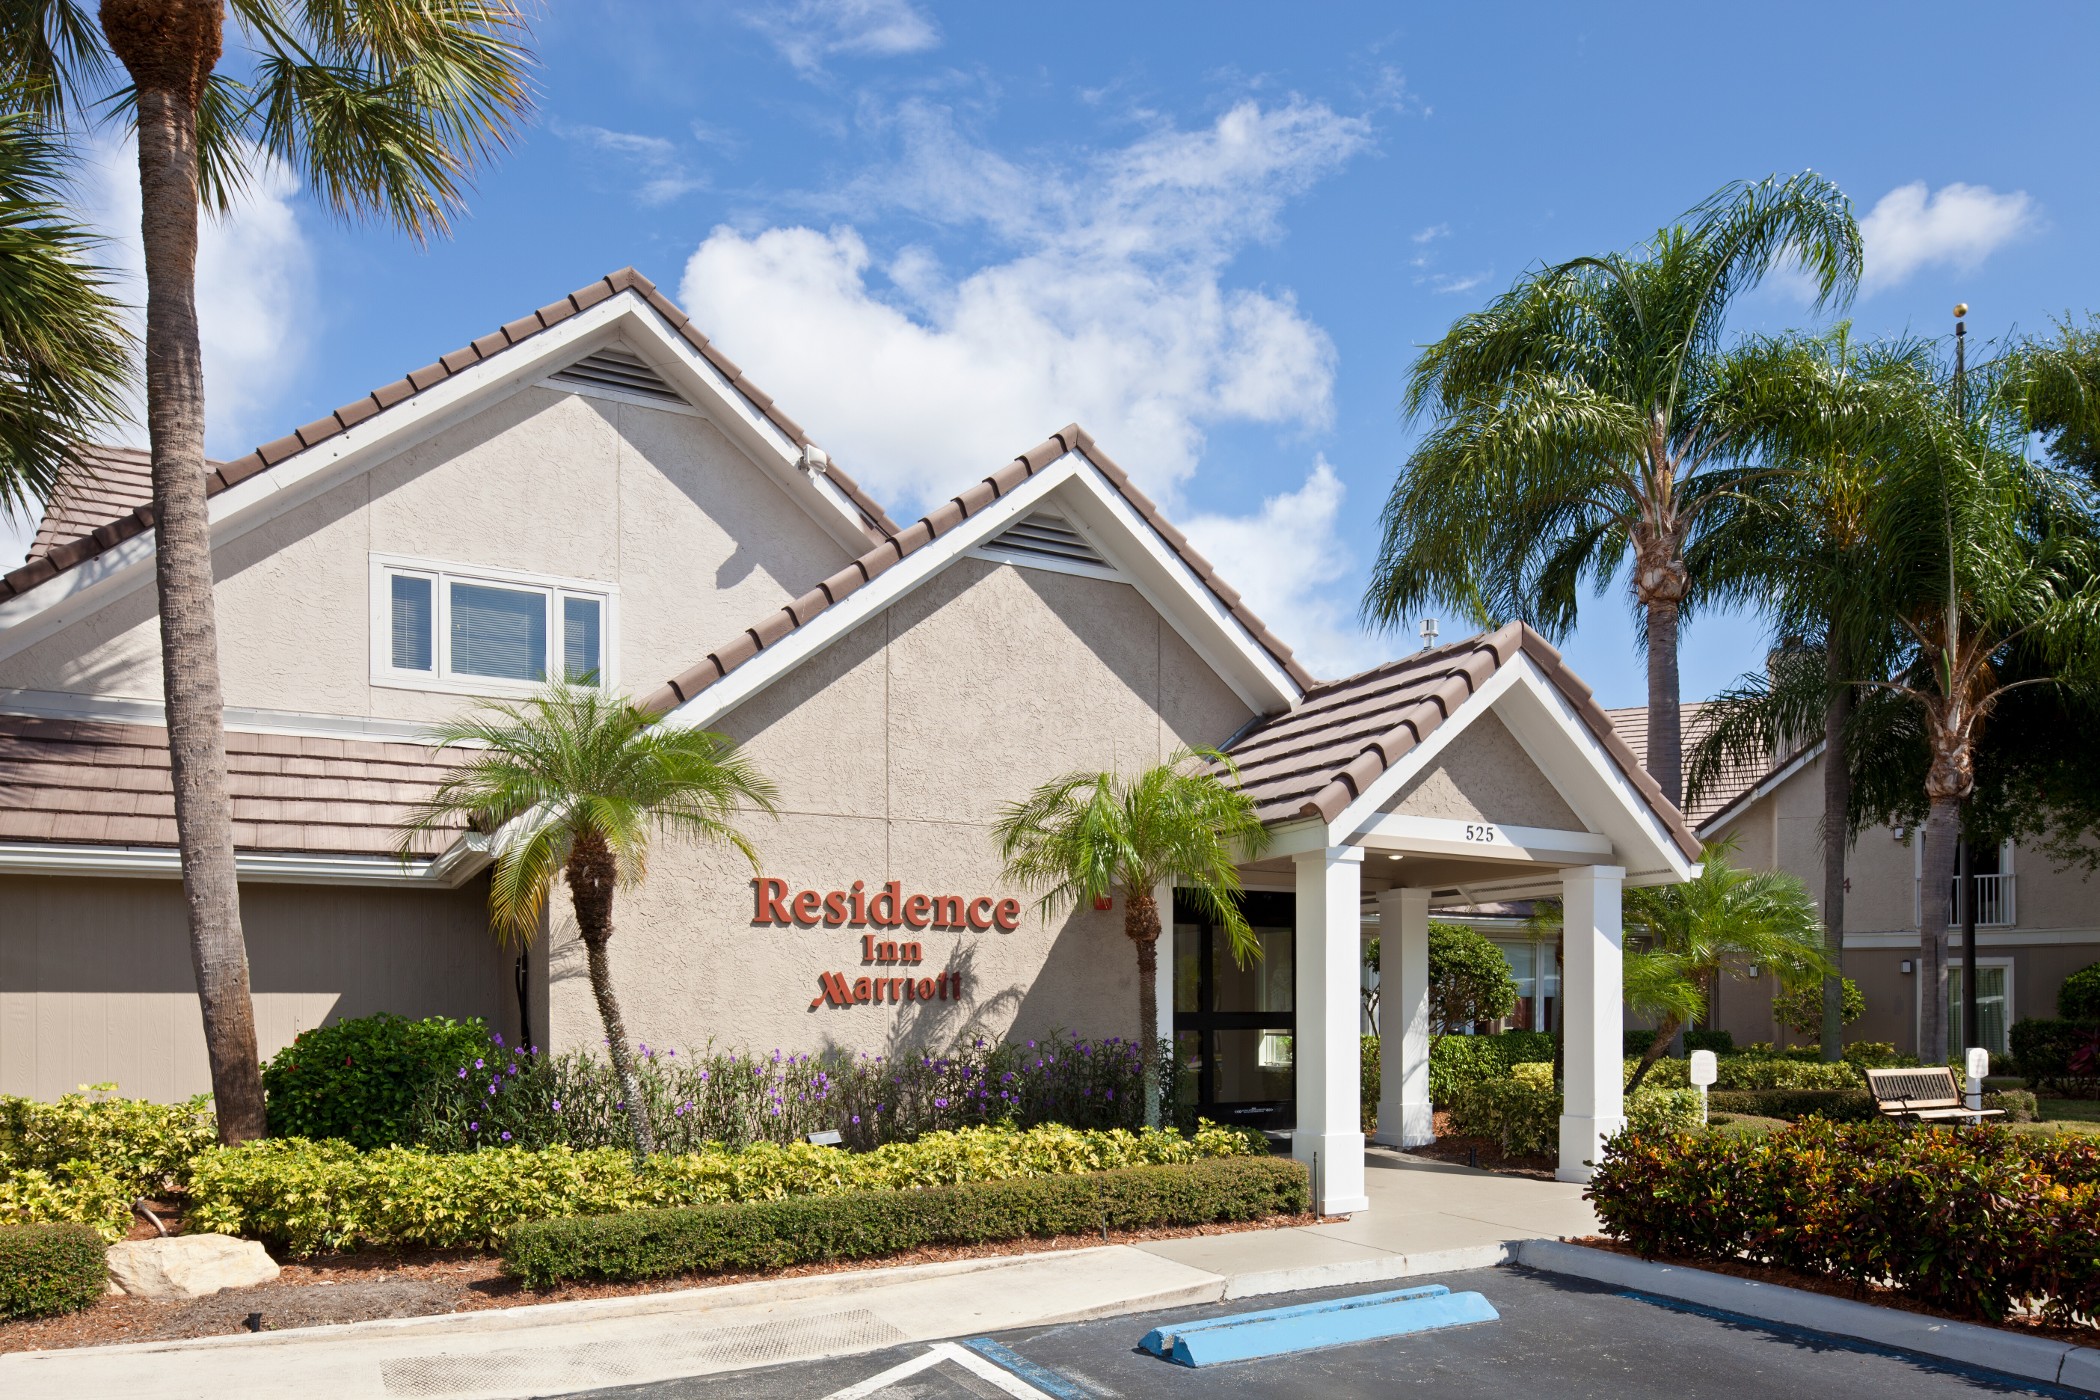 Residence Inn by Marriott Boca Raton image